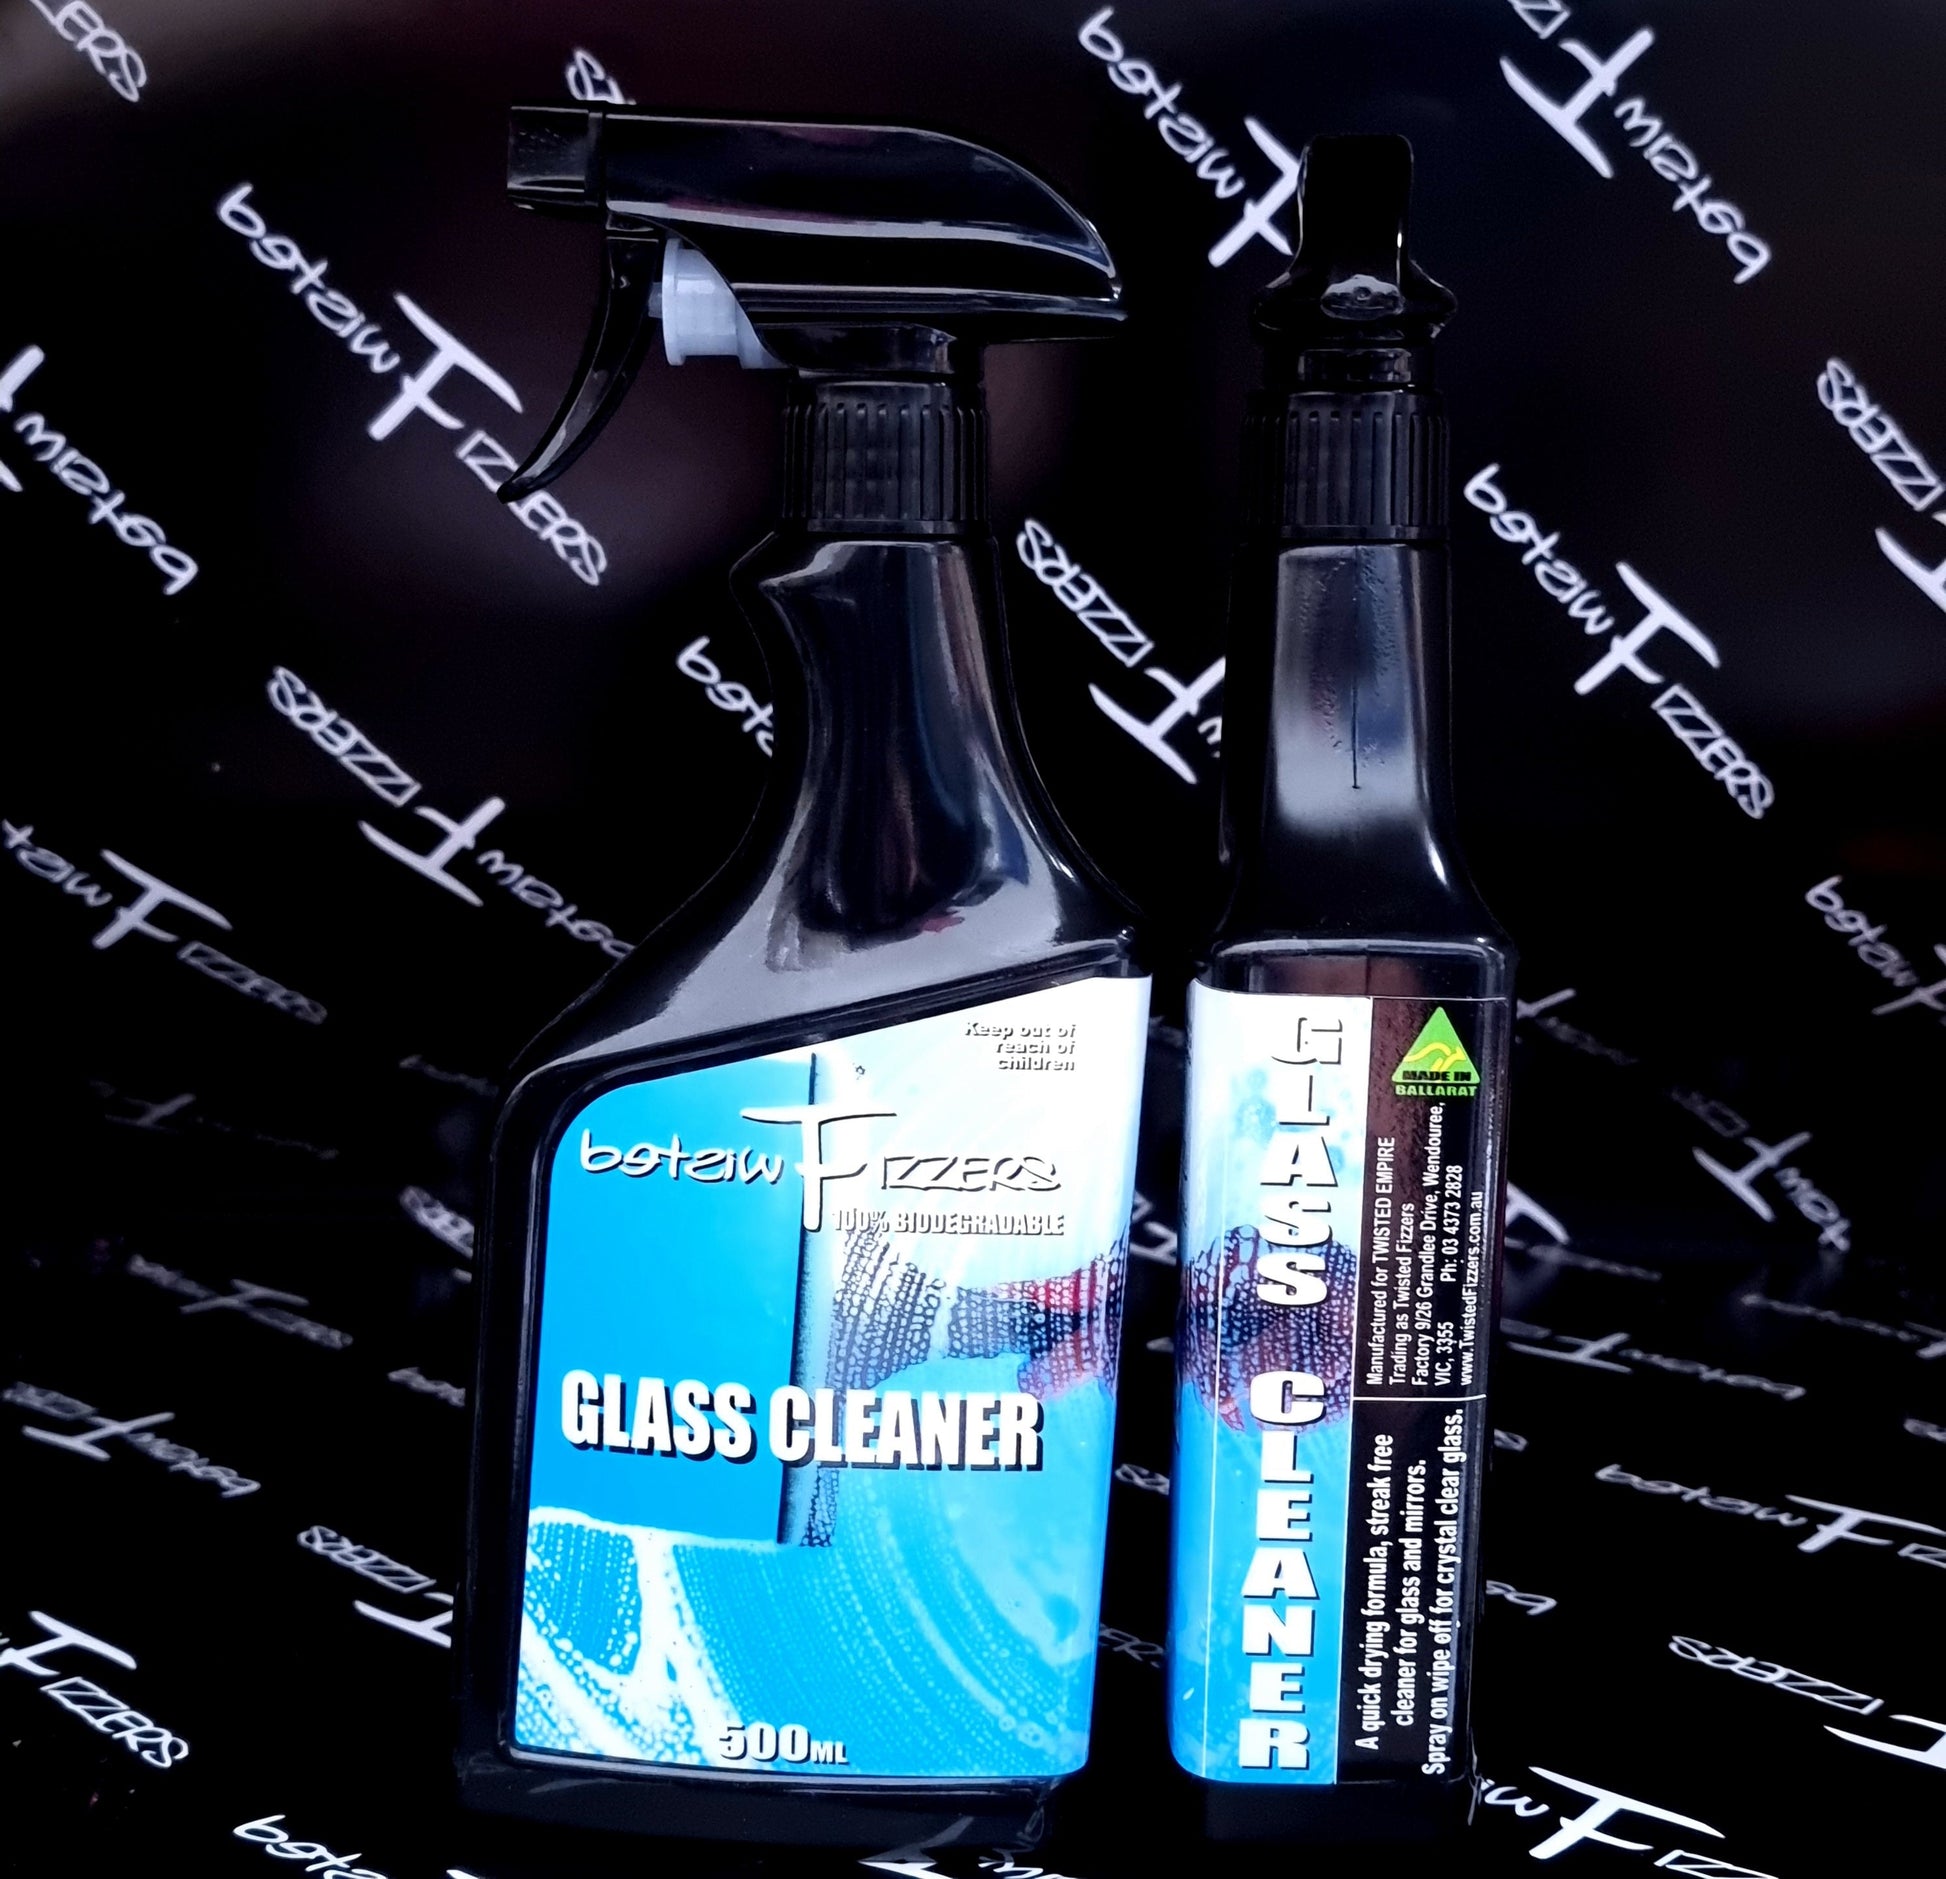 Glass cleaner - 500ml Spray Bottle